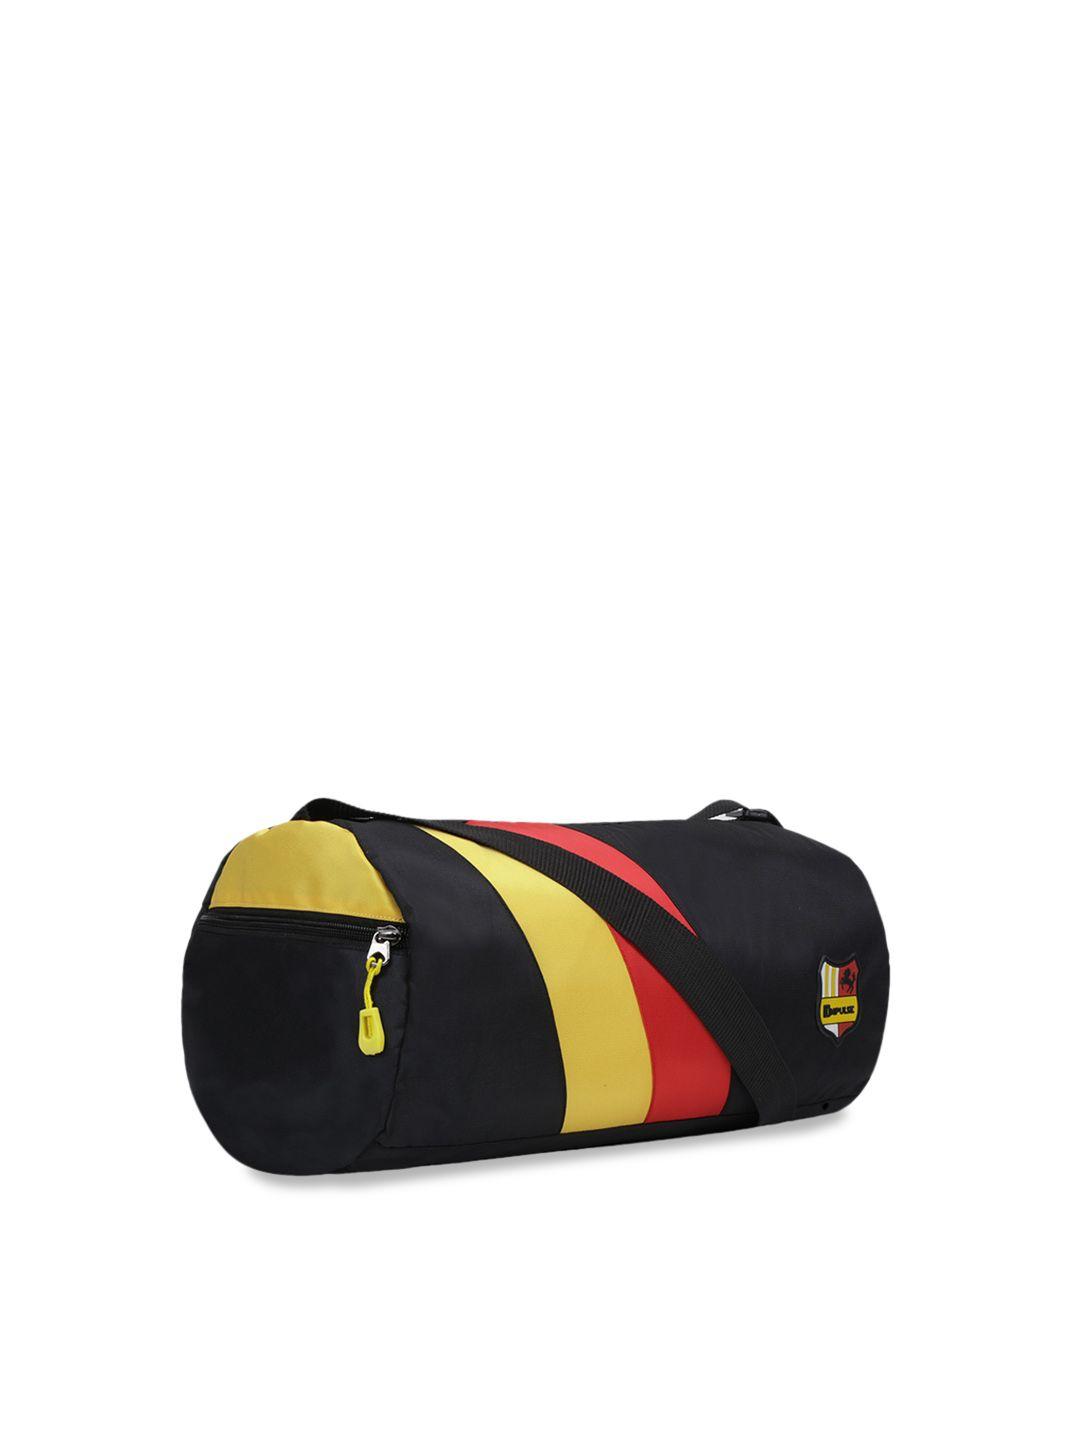 impulse unisex black & yellow colourblock pattern duffel bag